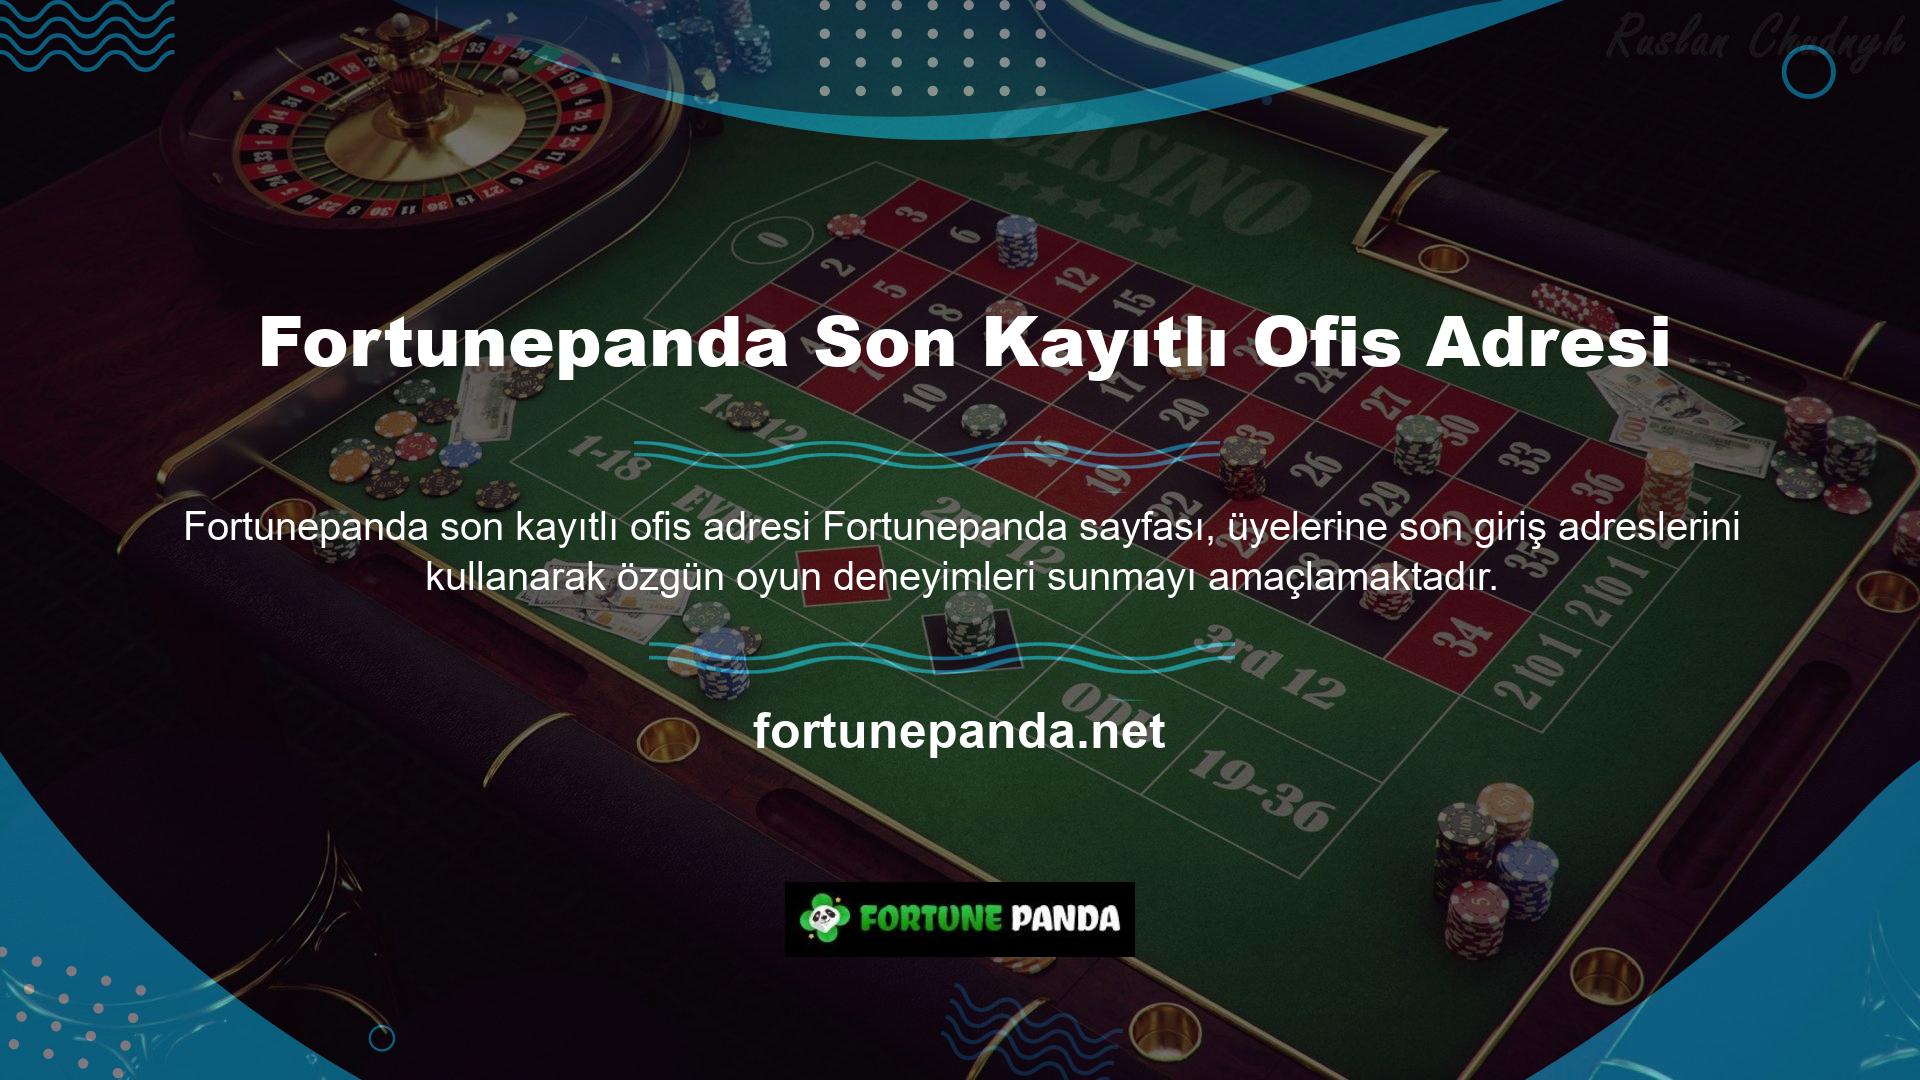 Kullanıcıları daha fazla dahil etmek için casinolar tarafından canlı casinolar veya çevrimiçi oyunlar kullanılmaktadır